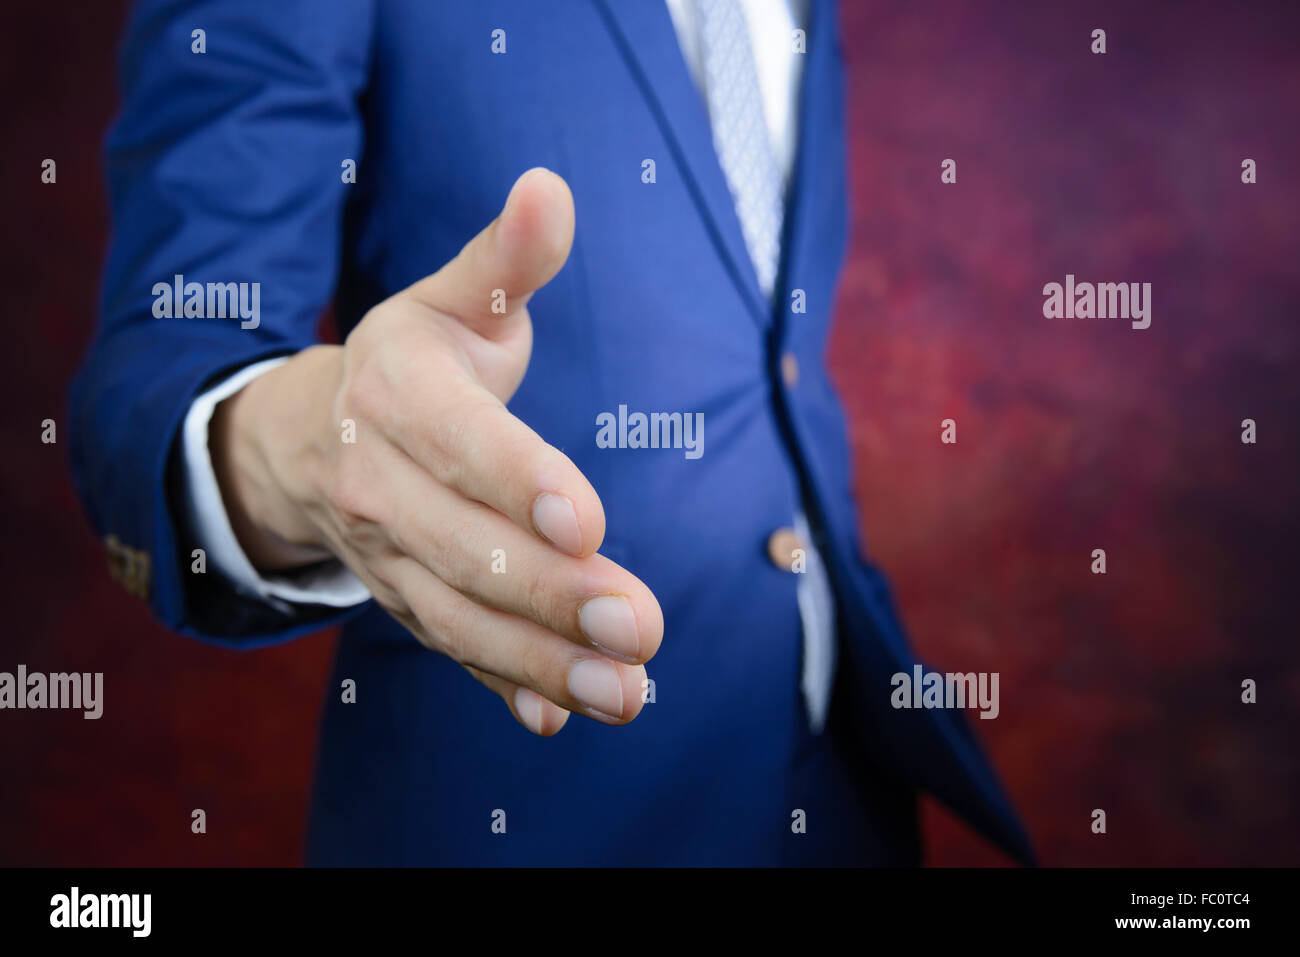 Empresario de traje azul llegando a mano para agitar las manos, hacer un negocio concepto Foto de stock